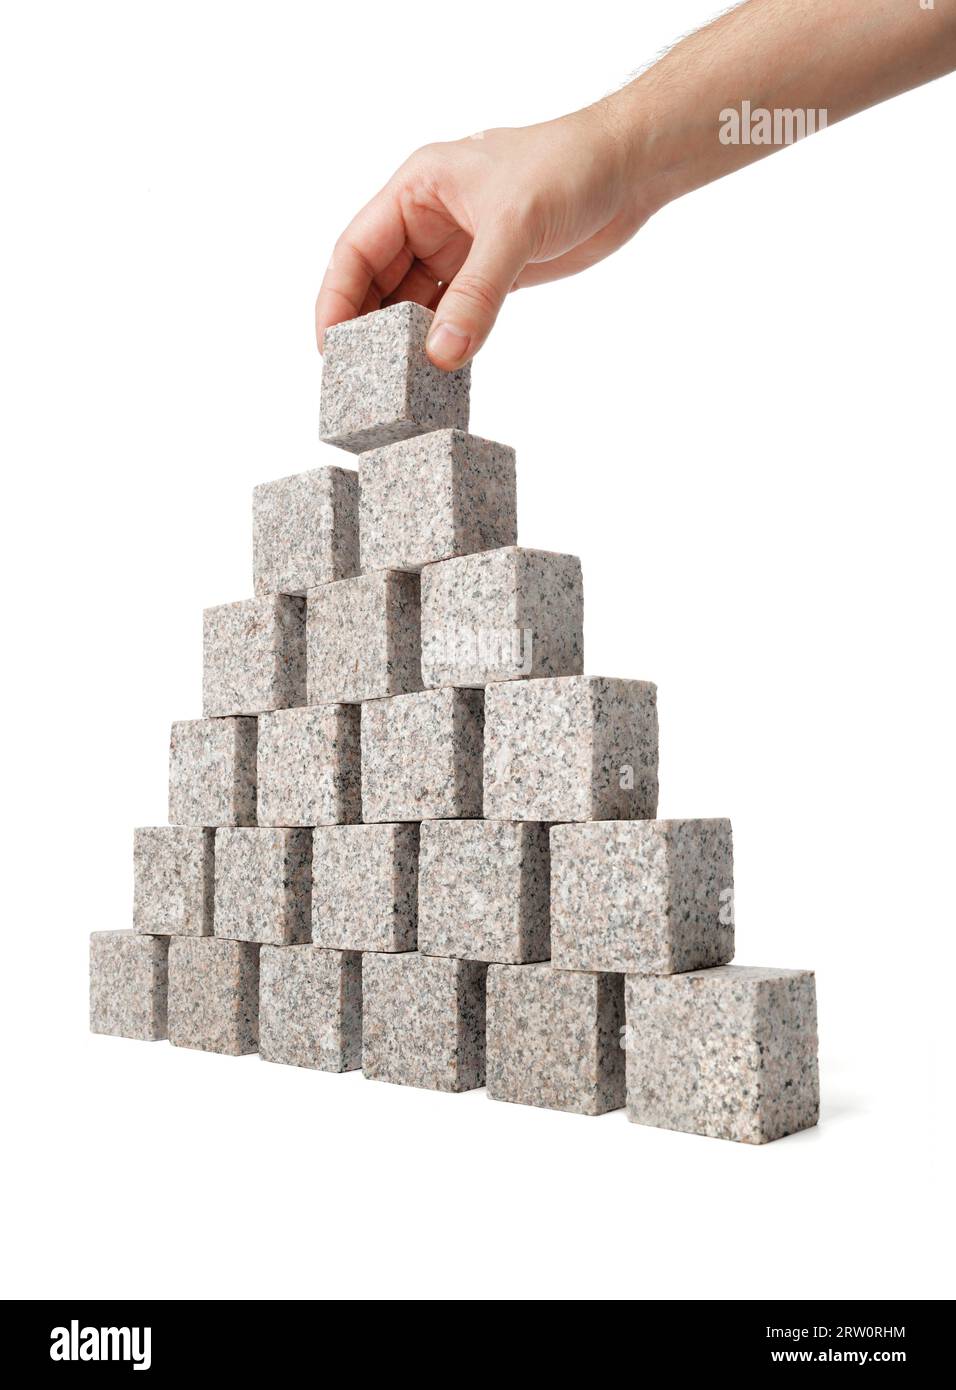 Uomo che costruisce una piramide fatta di piccoli blocchi di roccia granitica Foto Stock